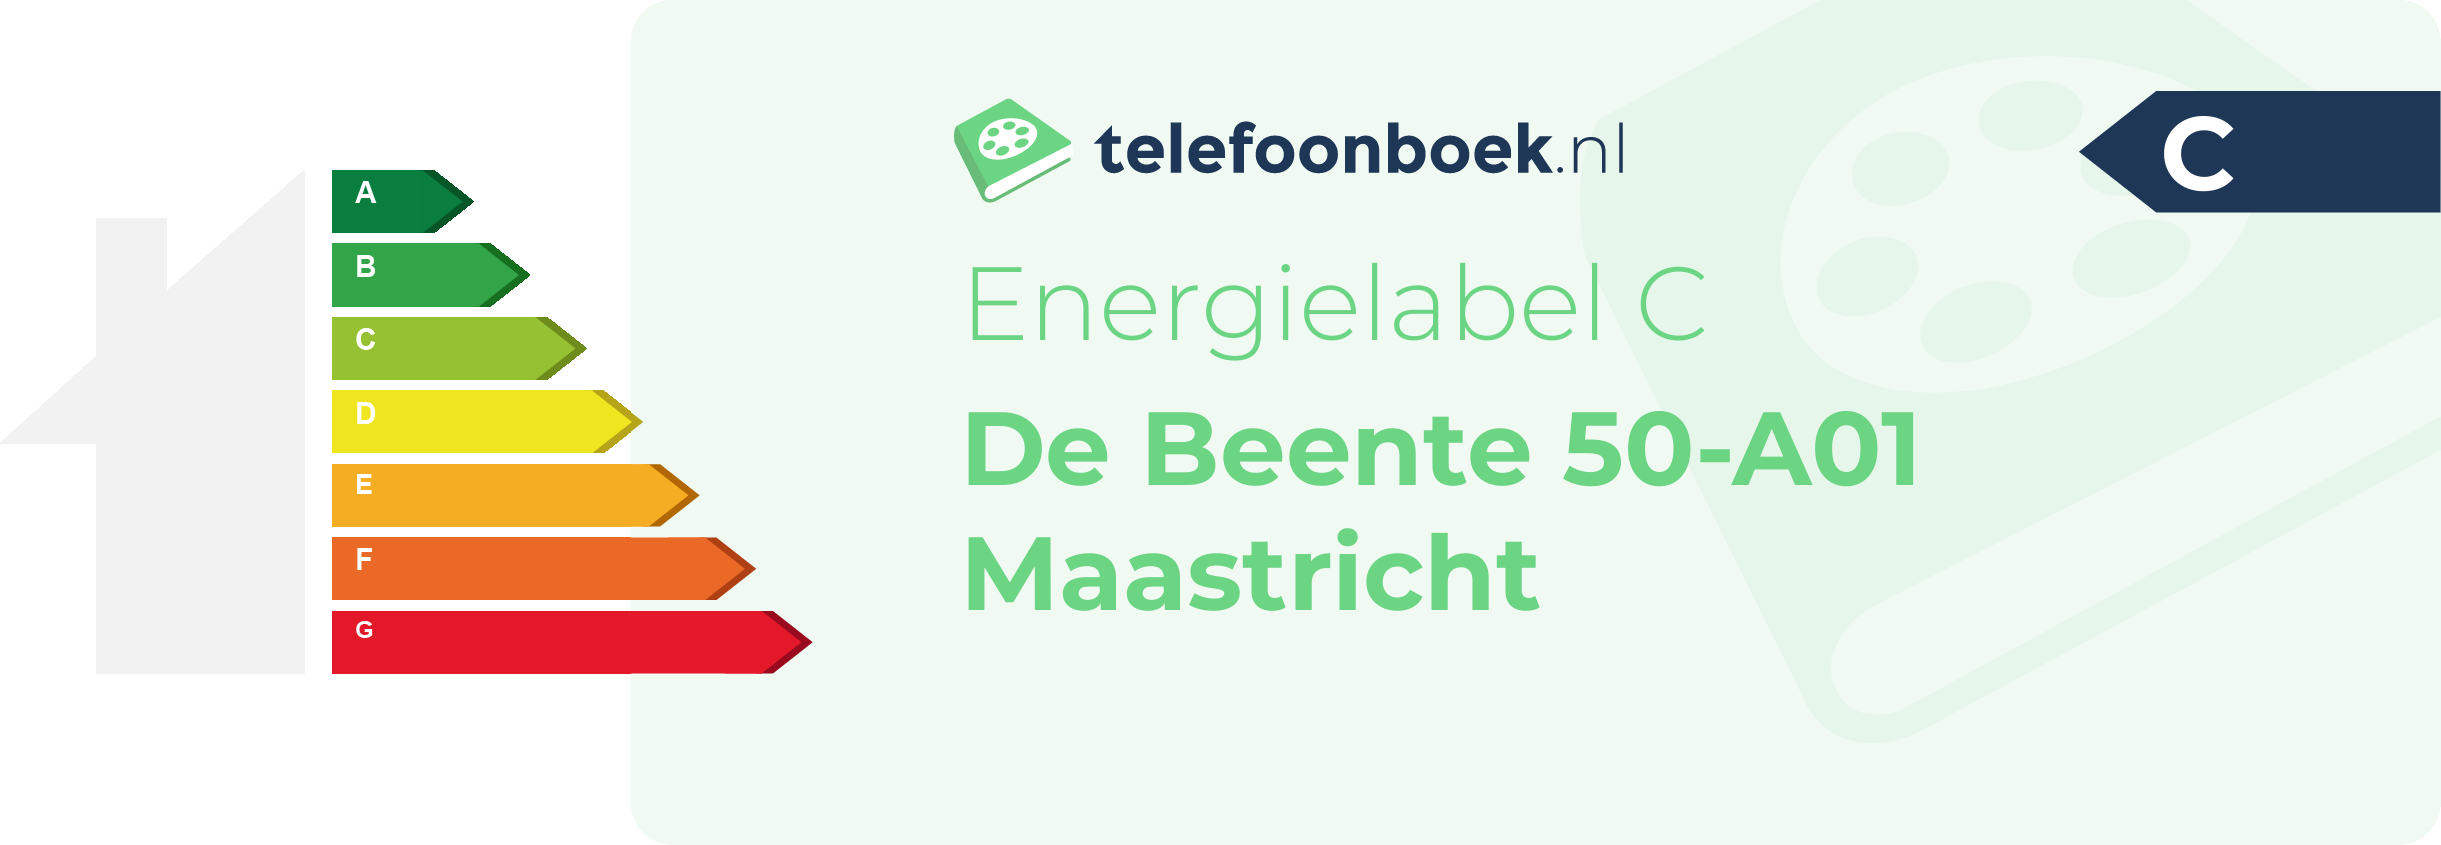 Energielabel De Beente 50-A01 Maastricht